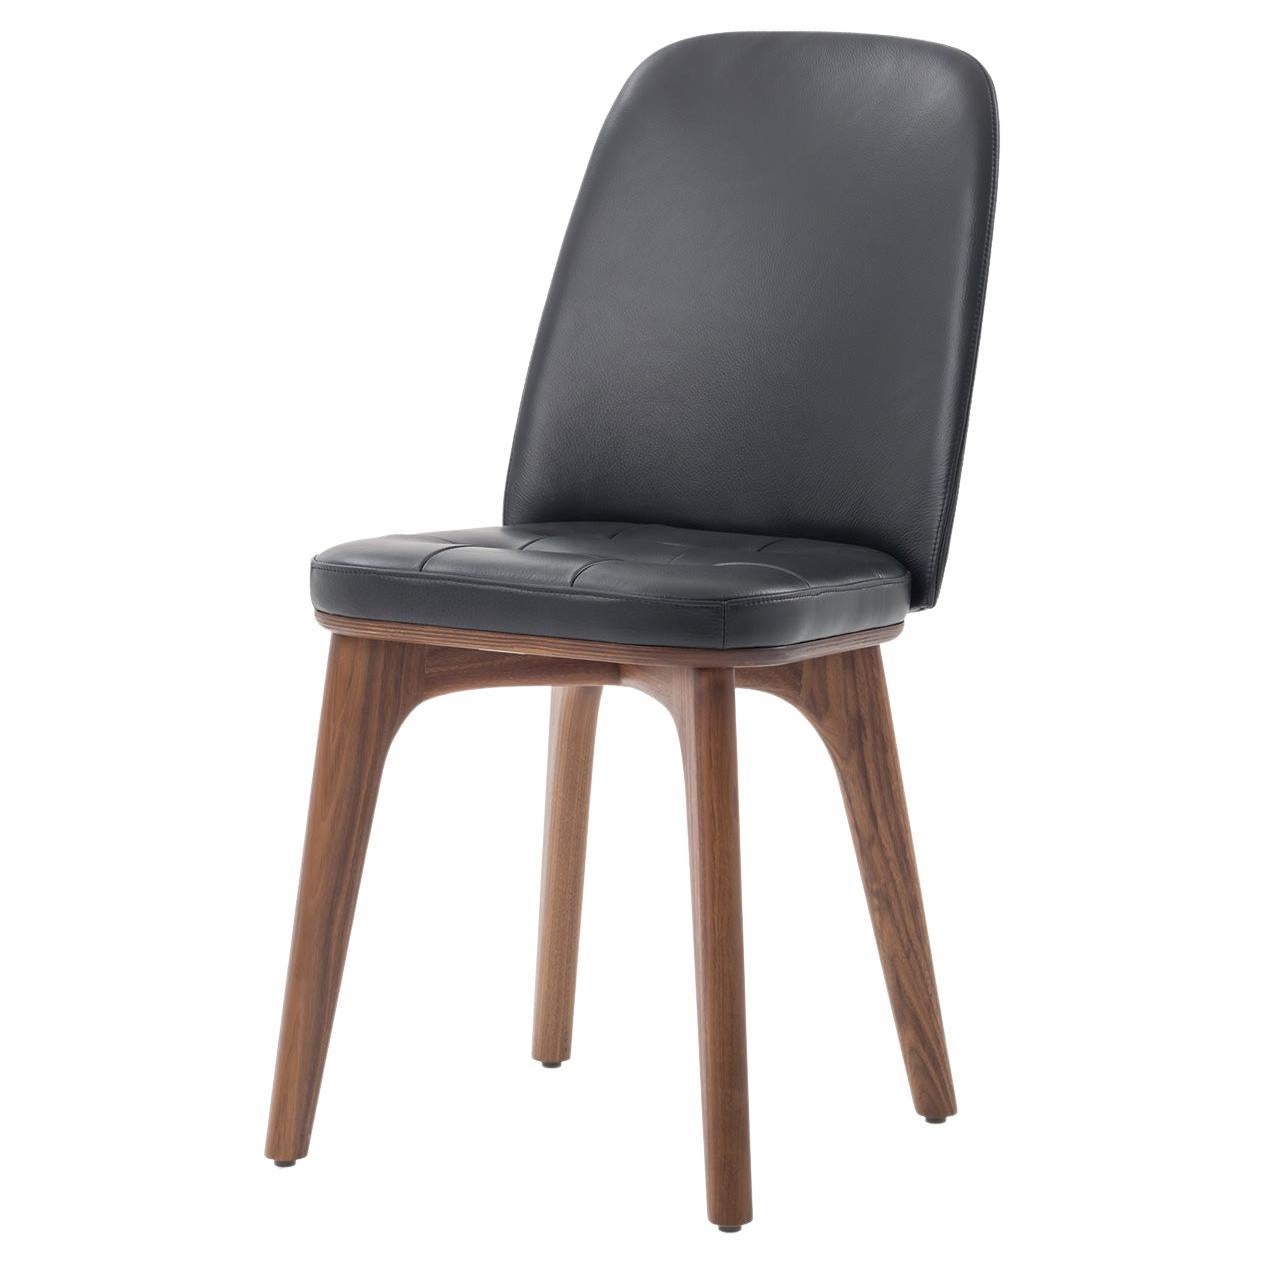 Chaise à dossier haut en frêne teinté et cuir noir d'entretien, utilité